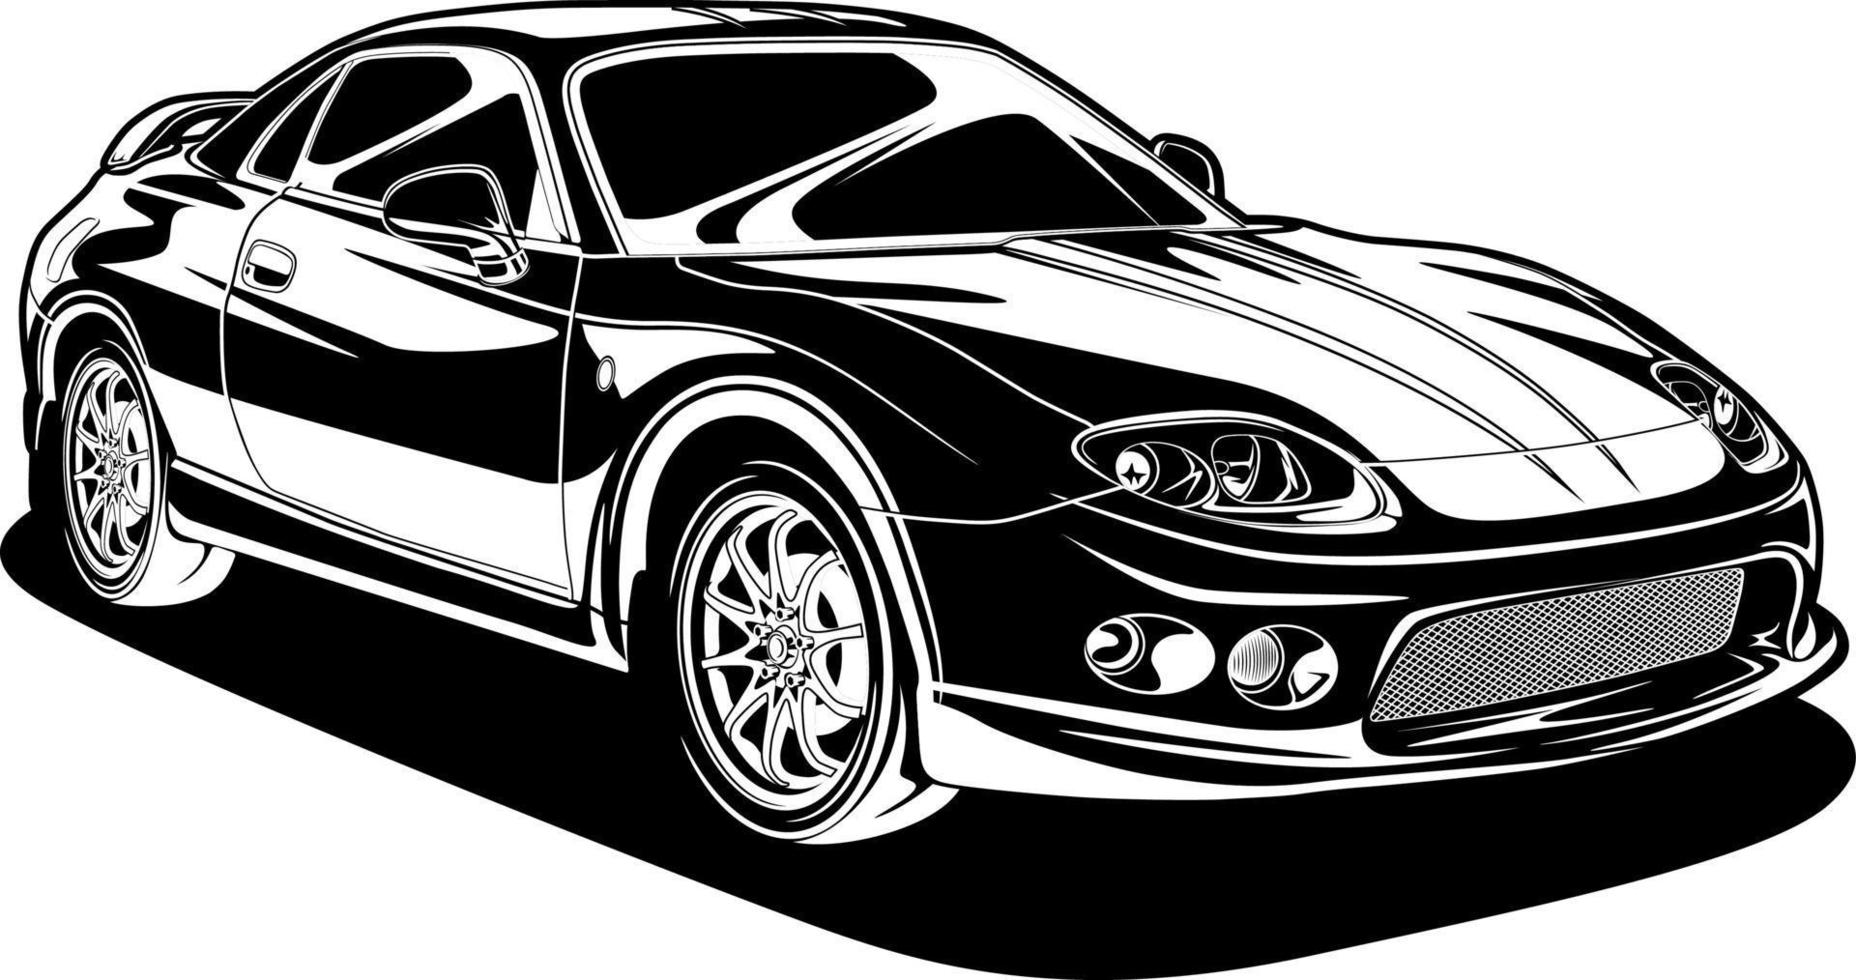 Schwarz-Weiß-Auto-Vektor-Illustration für die Konzeption vektor